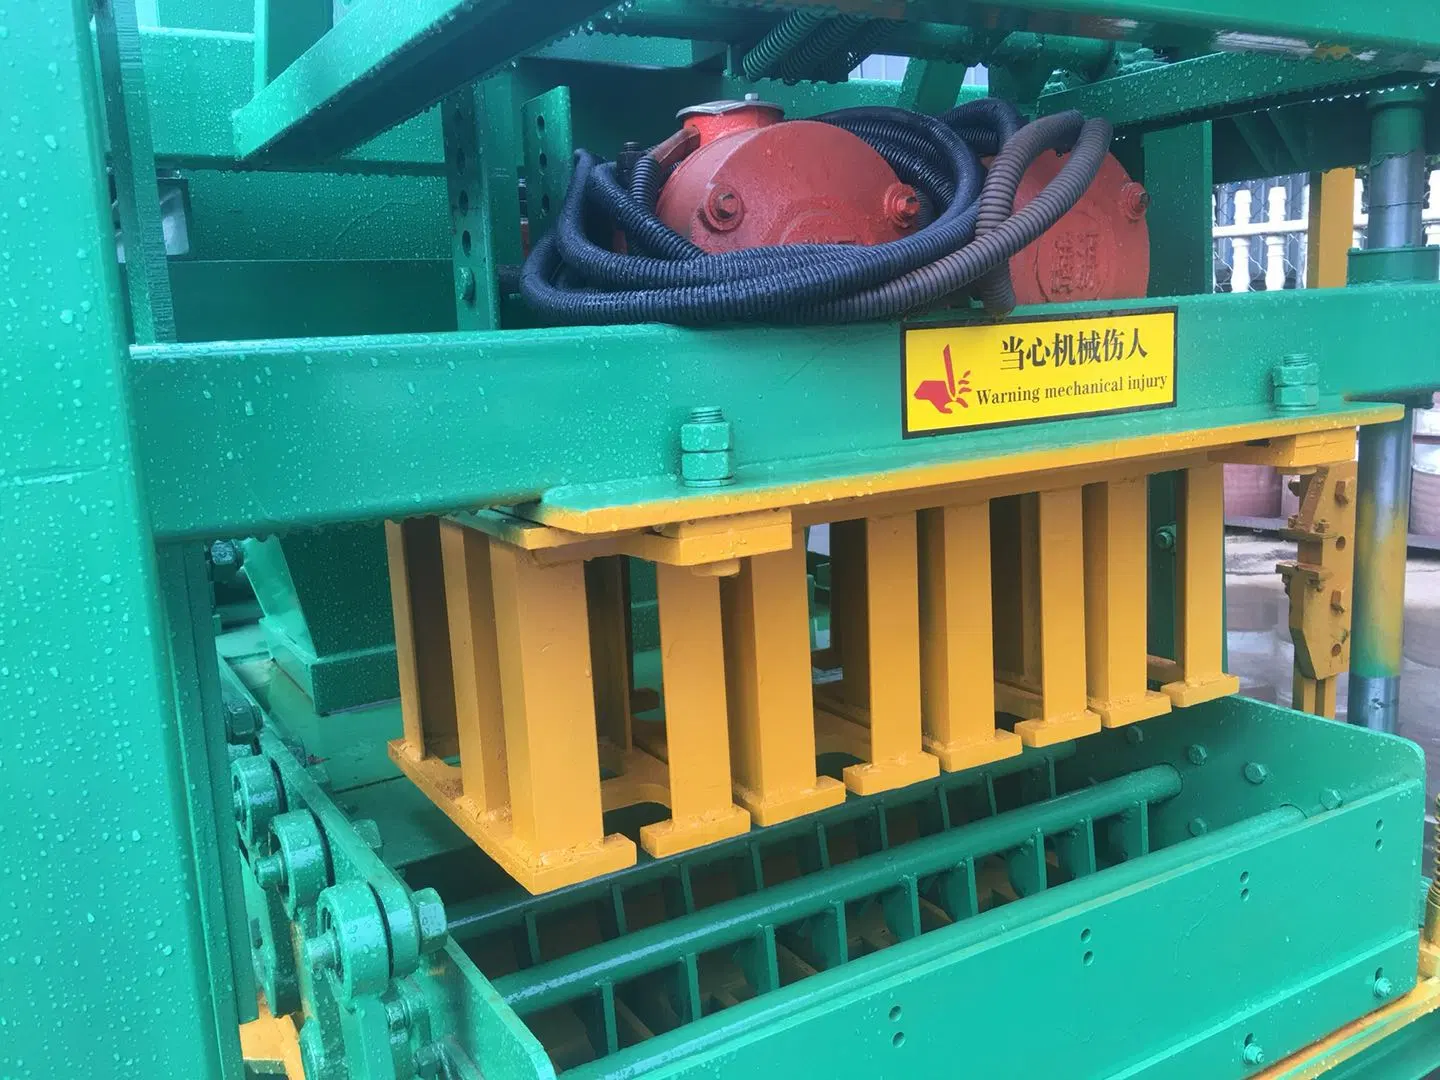 Hueco de hormigón Block-Forming Máquina/ladrillo macizo que hace la máquina en Nigeria